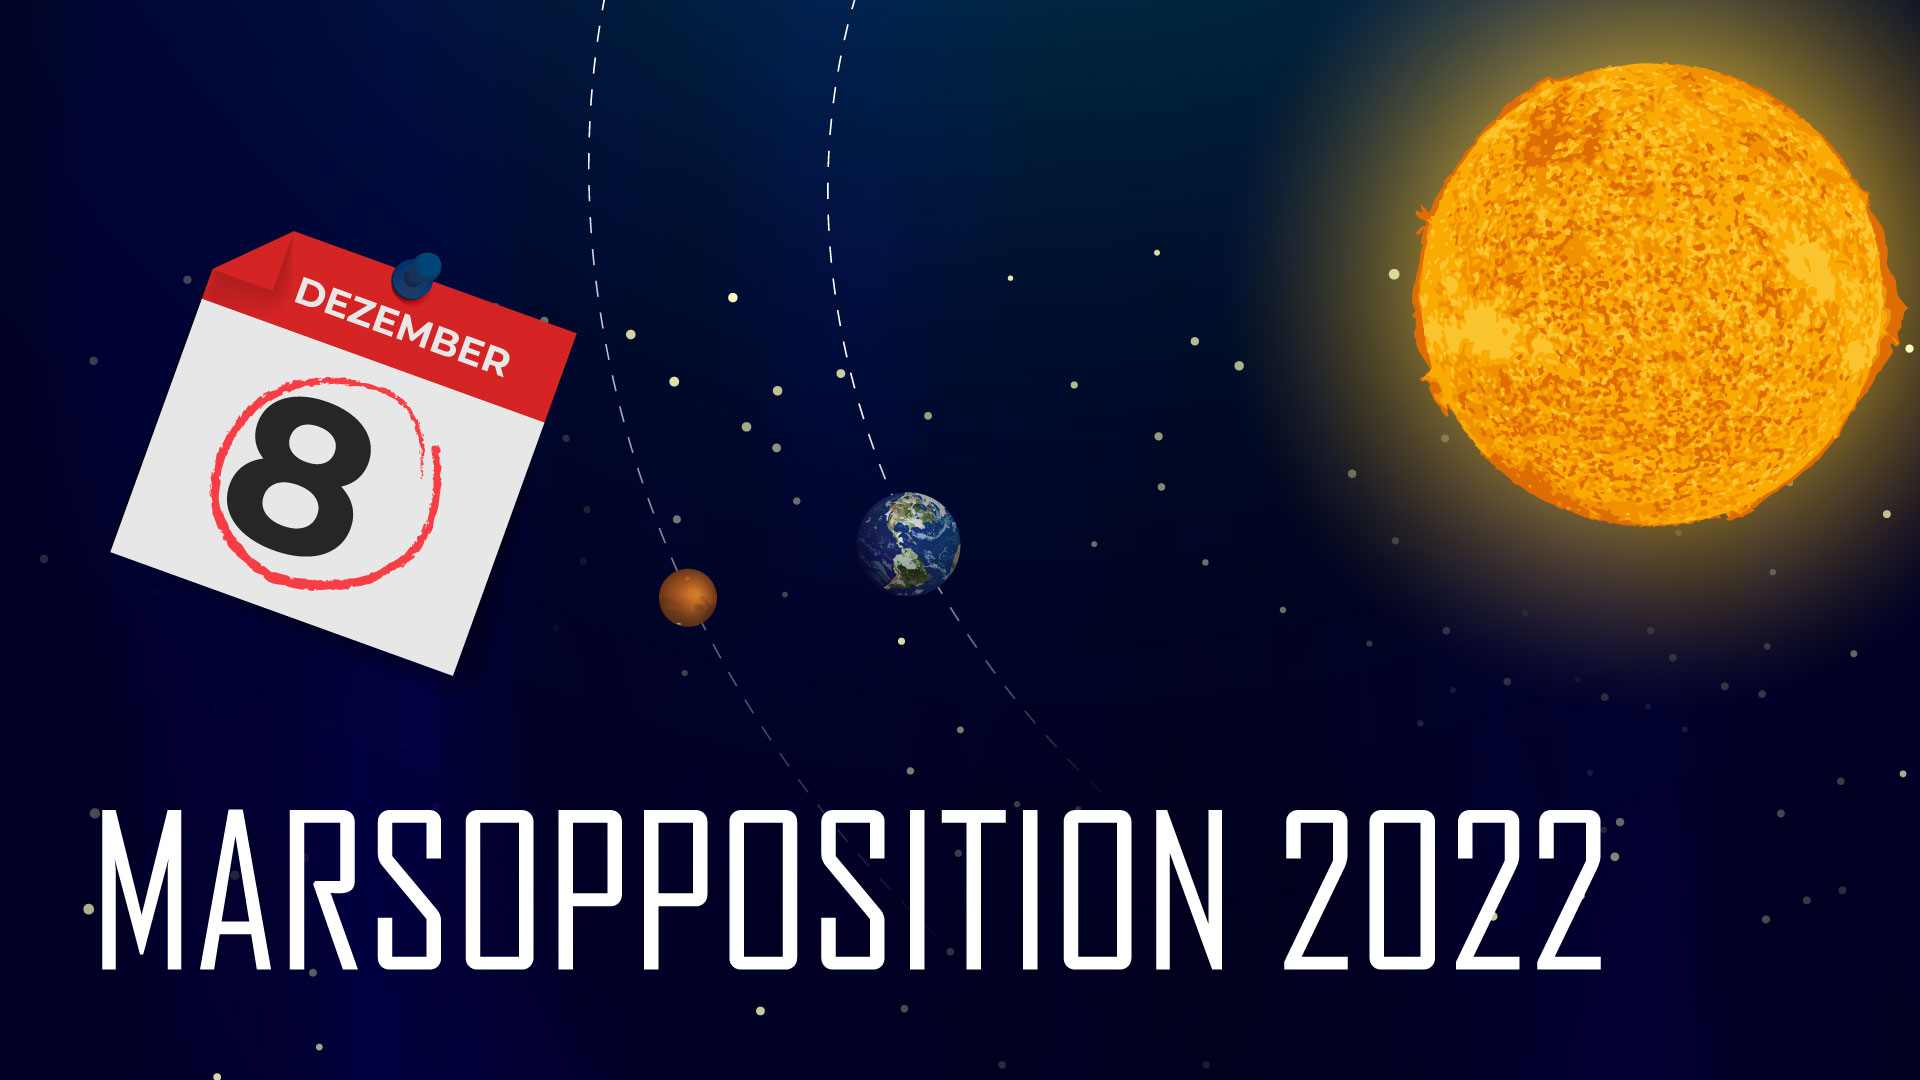 Infografik: Marsopposition 2022

